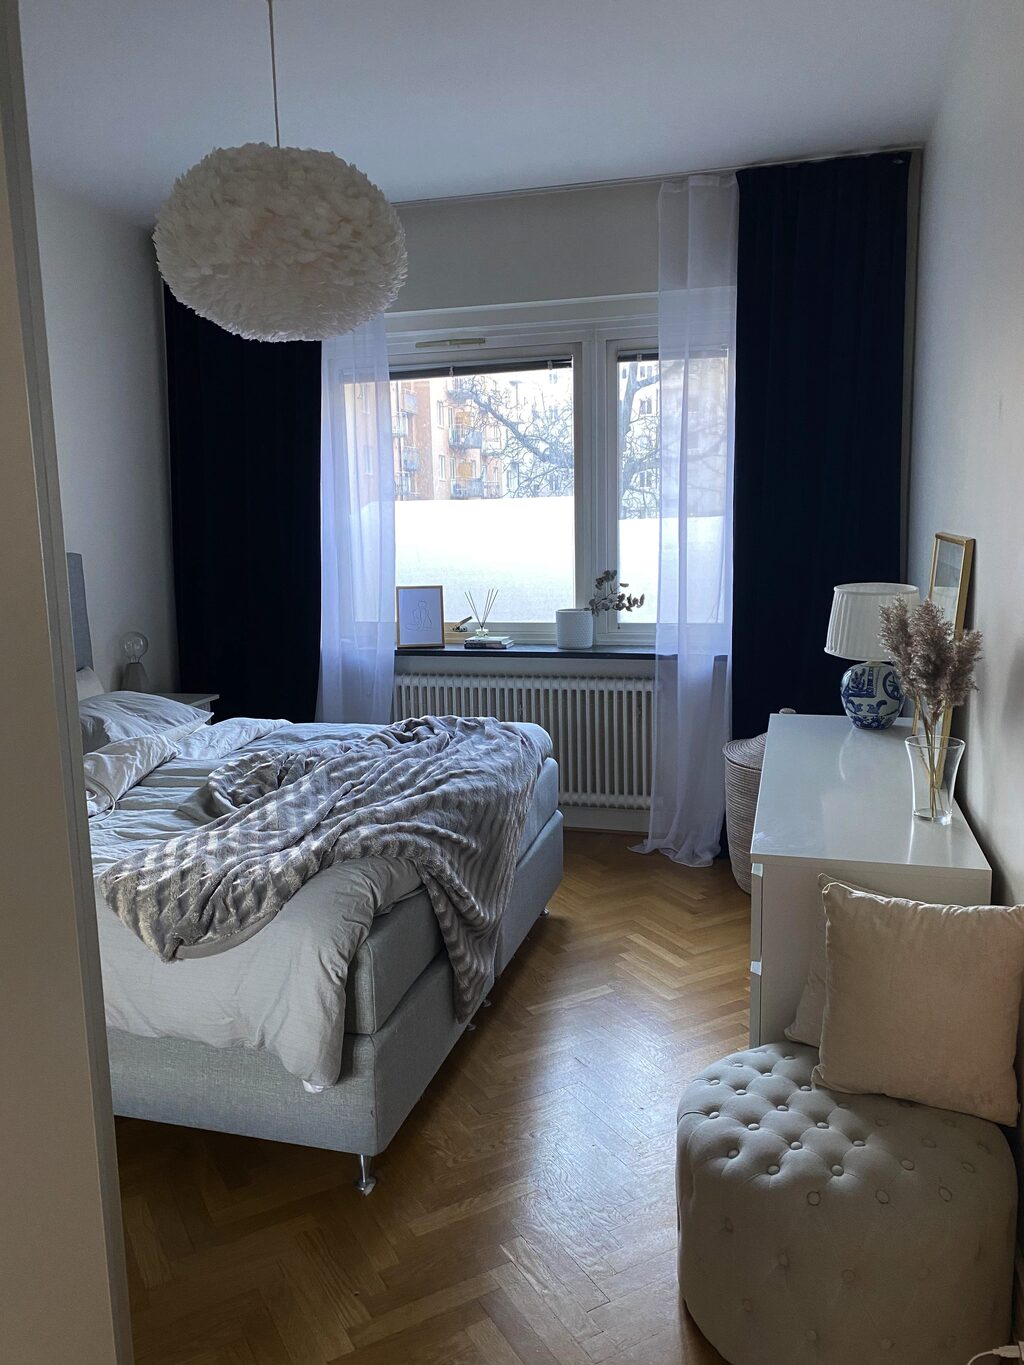 Lägenhetsbyte - Thottsgatan 14, 211 48 Malmö